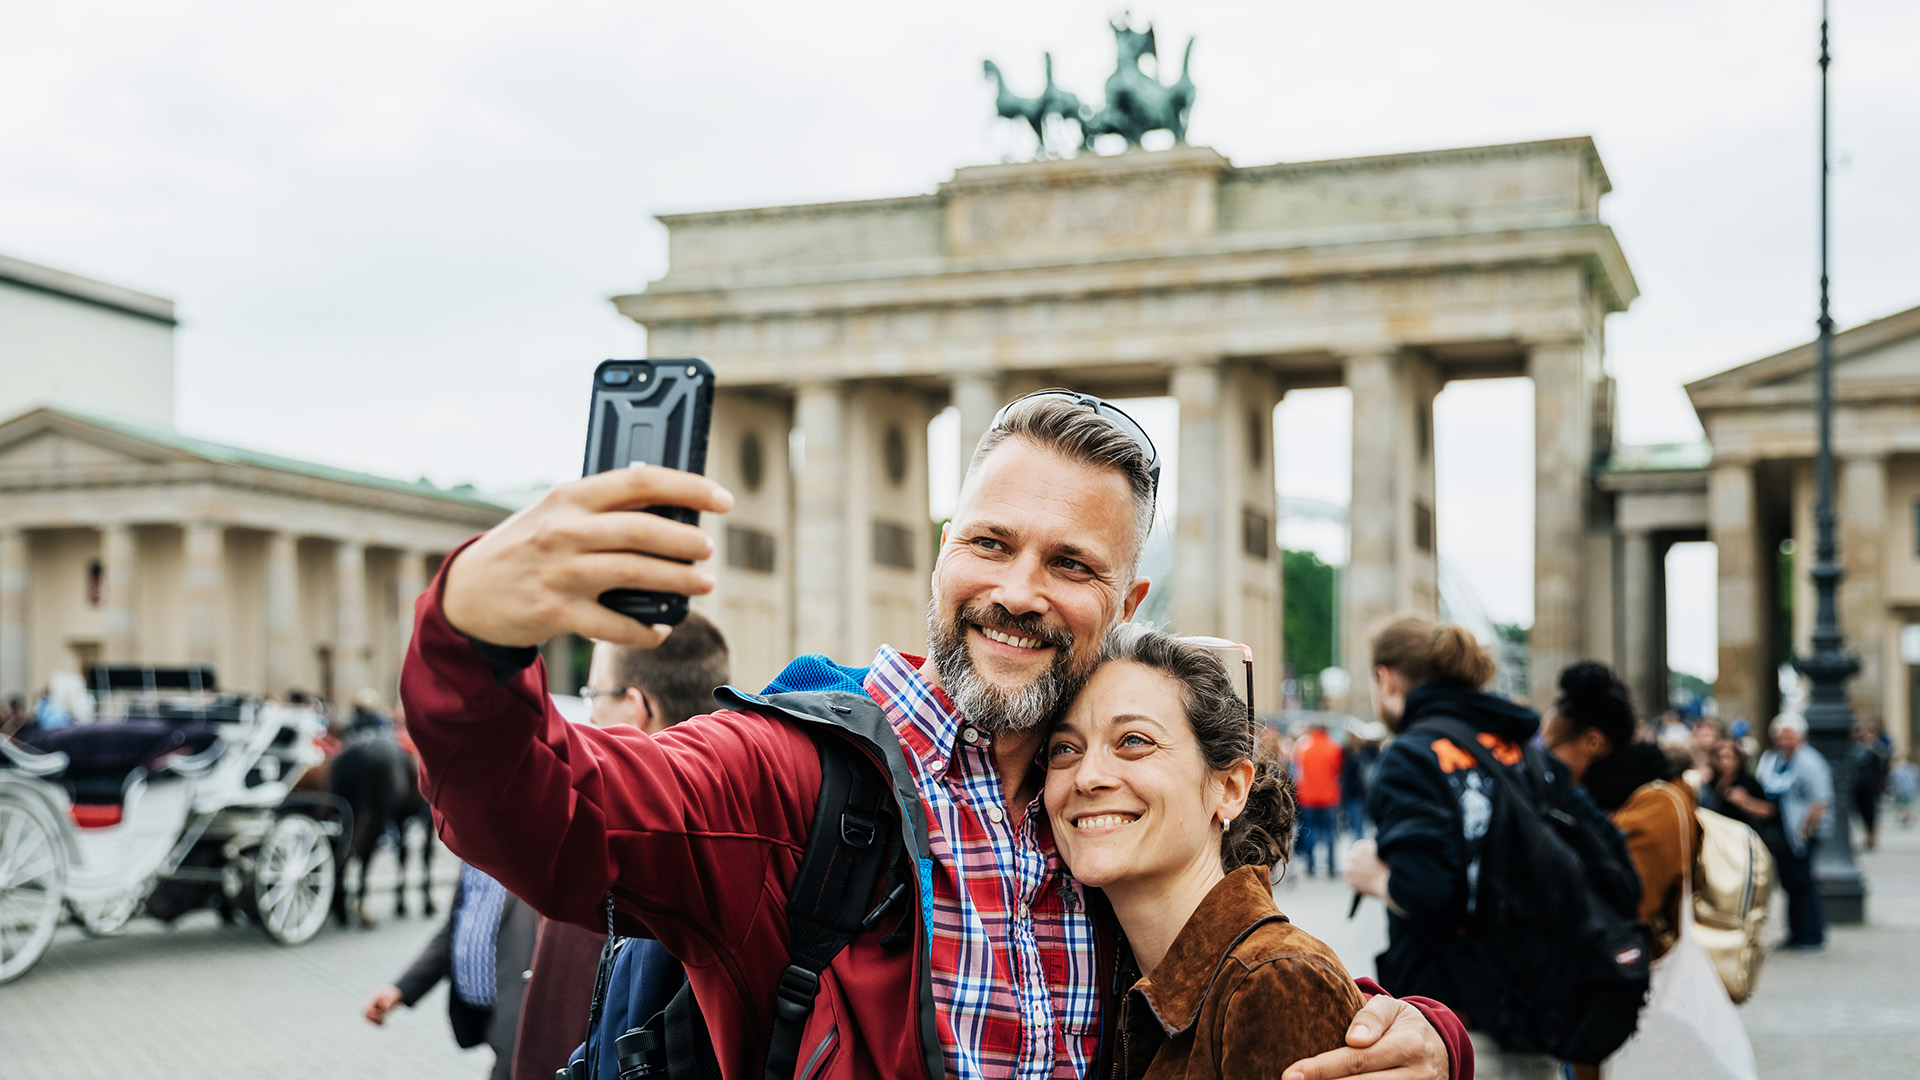 Una pareja se toma una selfie con la Puerta de Brandeburgo de espaldas, en Berlín

